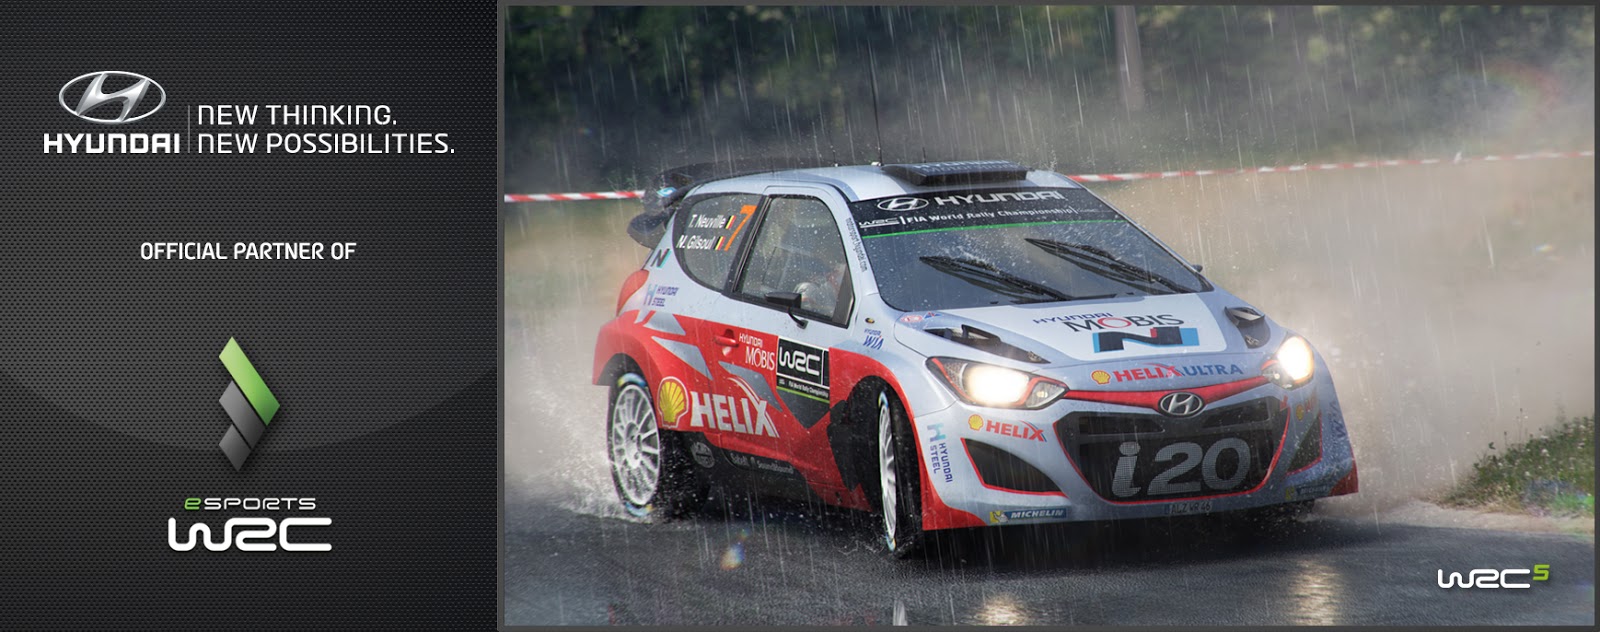 eSportsWRC Hyundai announcement picture Ο νικητής του eSports WRC θα κερδίσει ένα αυτοκίνητο Hyundai i20!